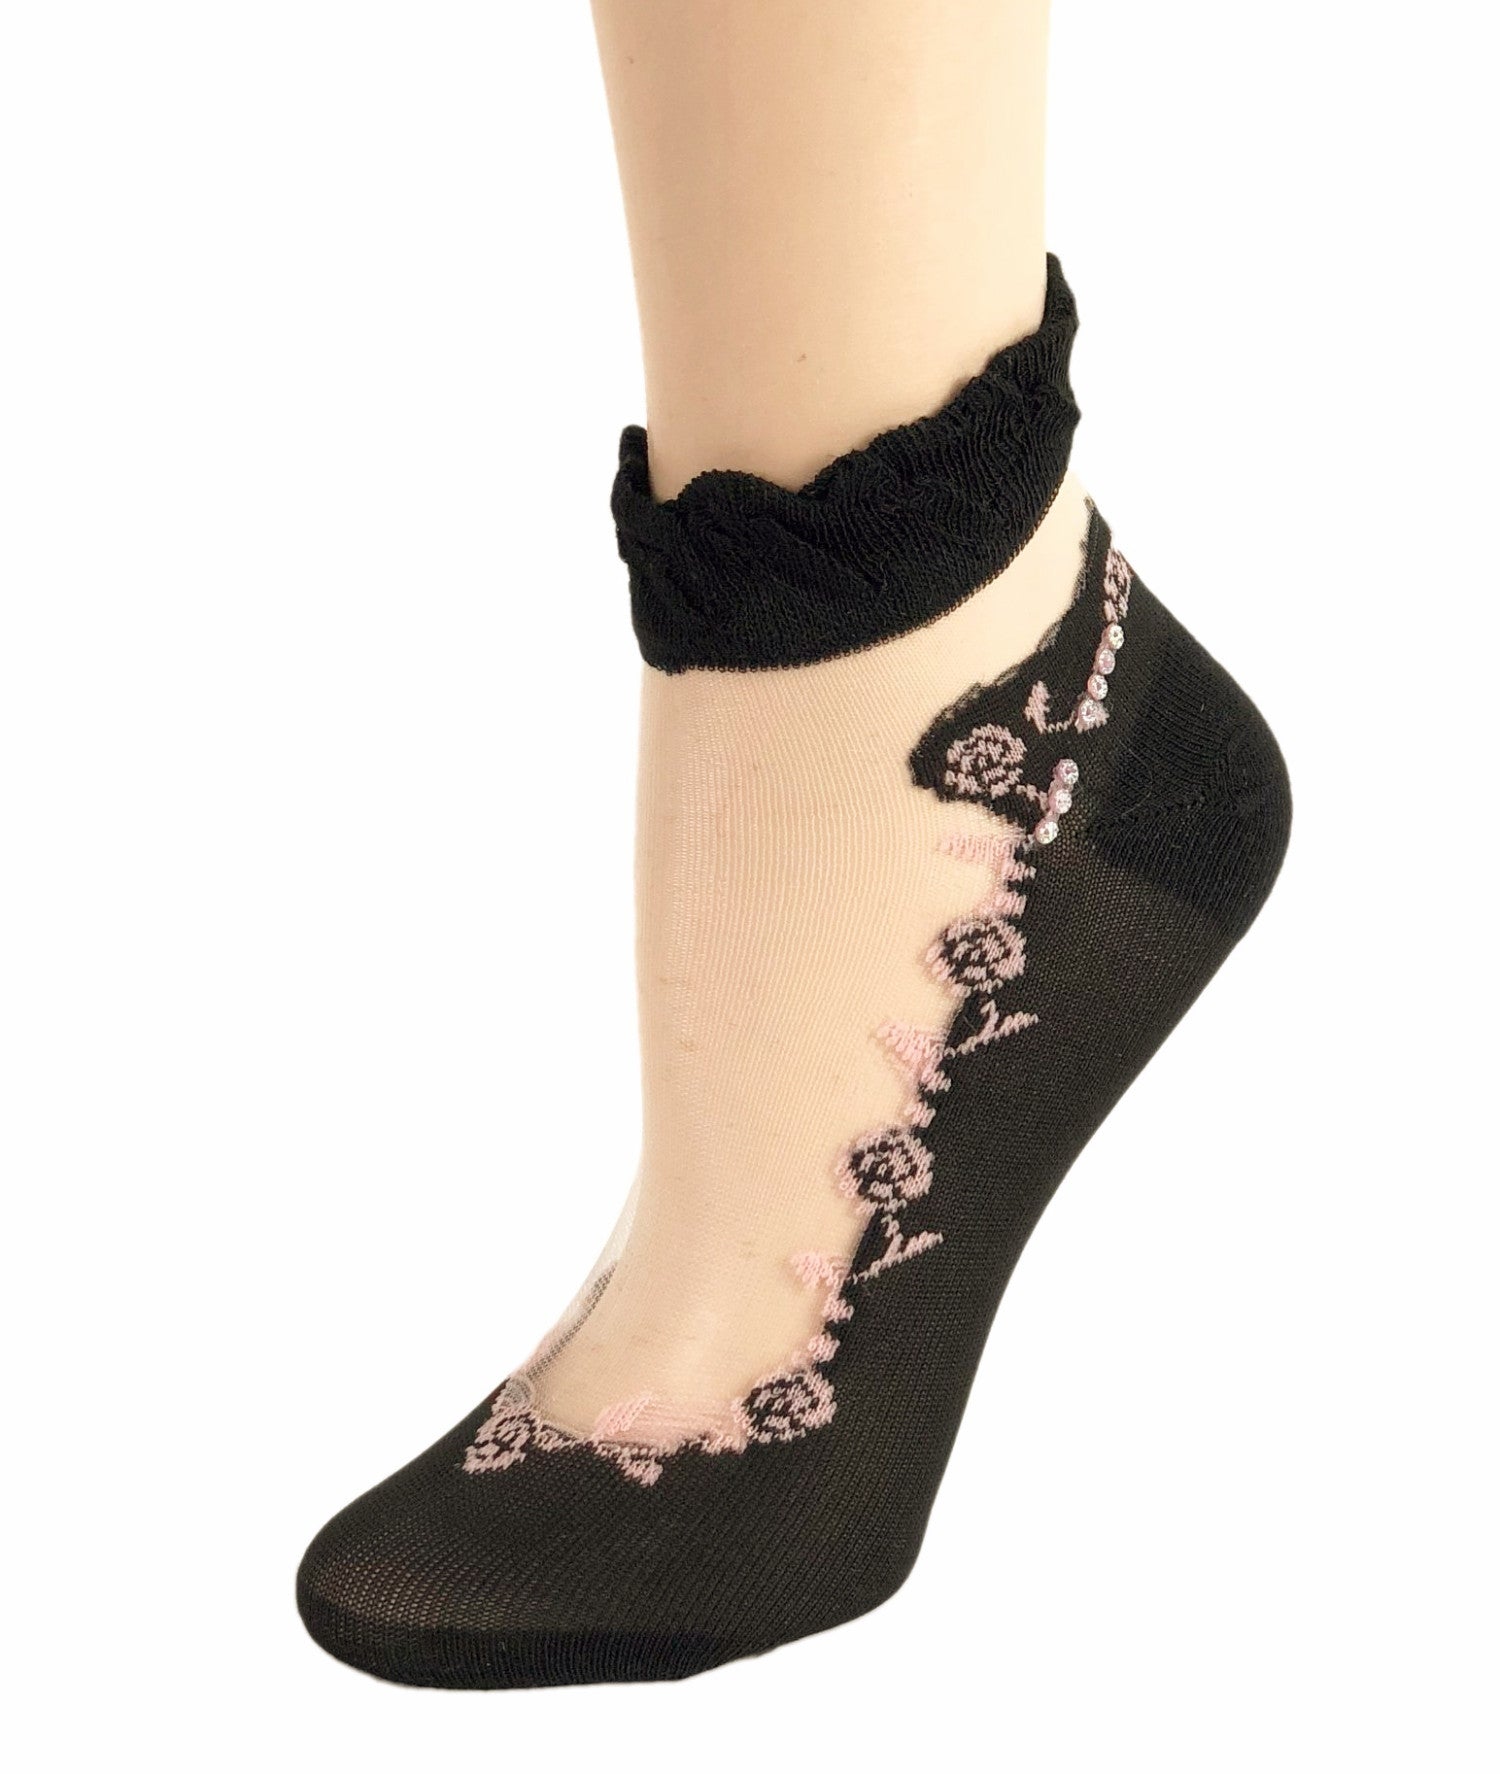 Sleek Pink Roses Ankle Sheer Socks